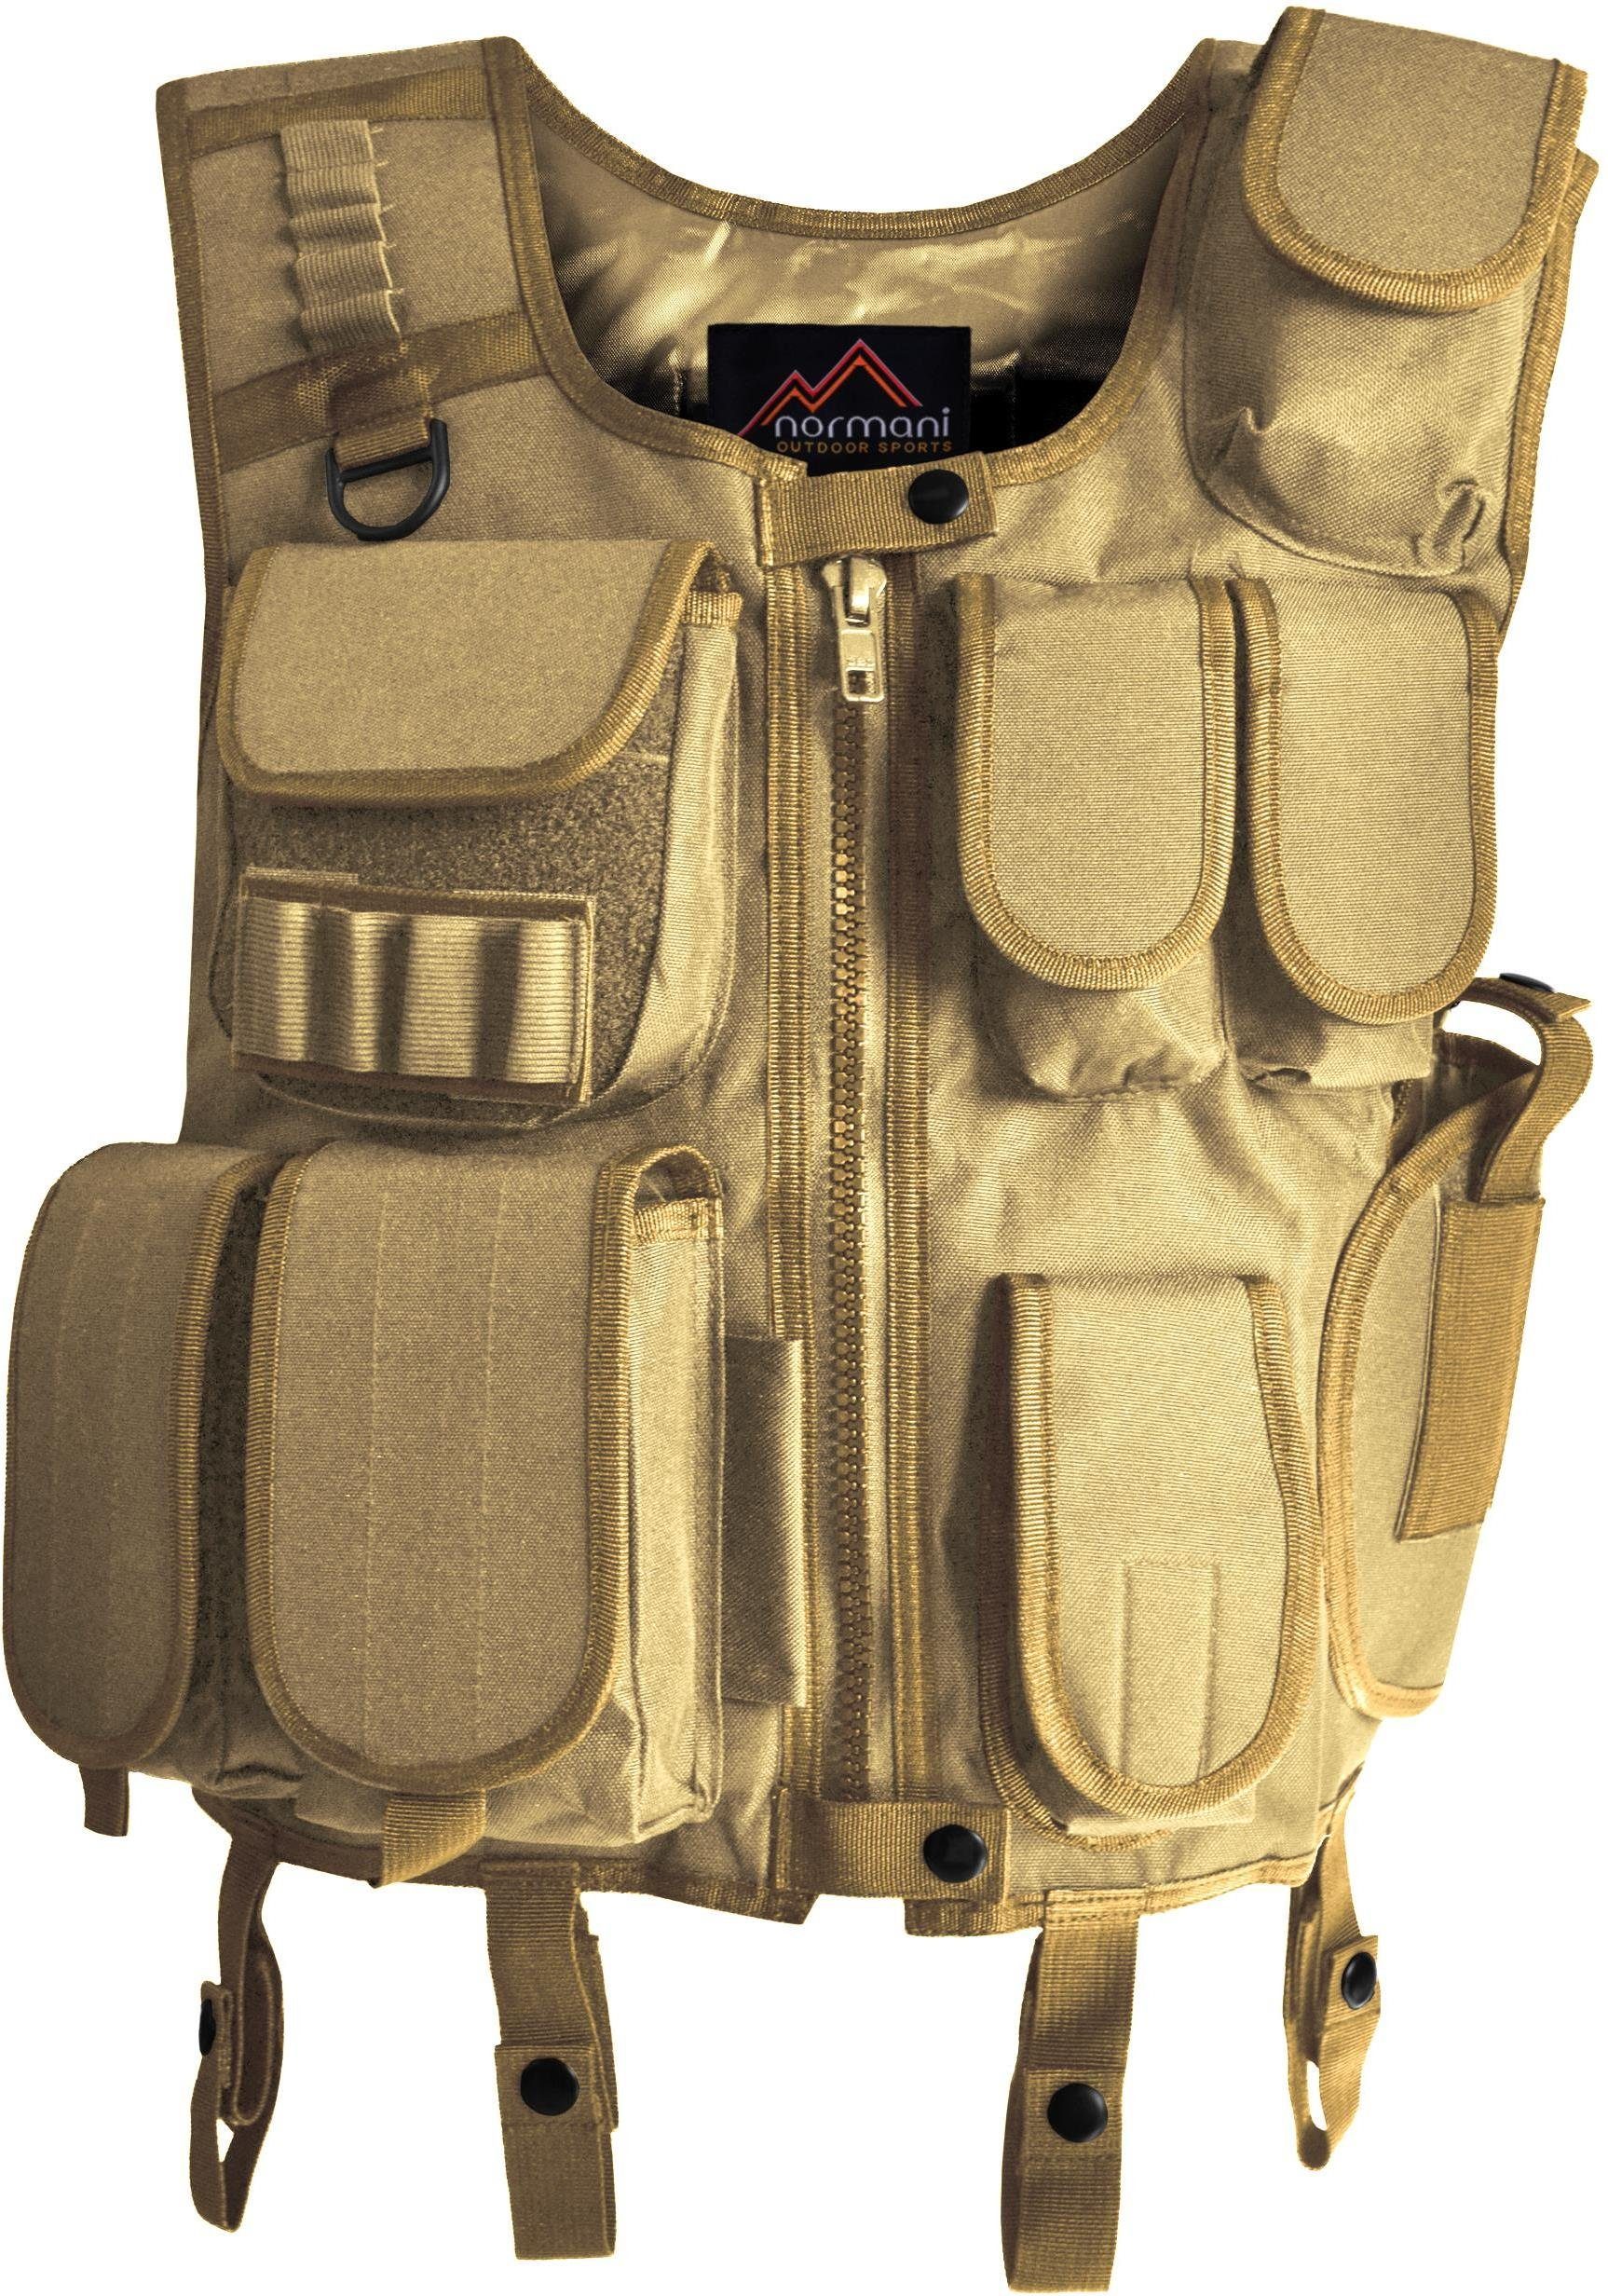 Taschen SWAT Tac Funktionsweste Coyote und Charge-V Einsatzweste vielen mit Weste normani Pistolenholster Taktische Outdoorweste